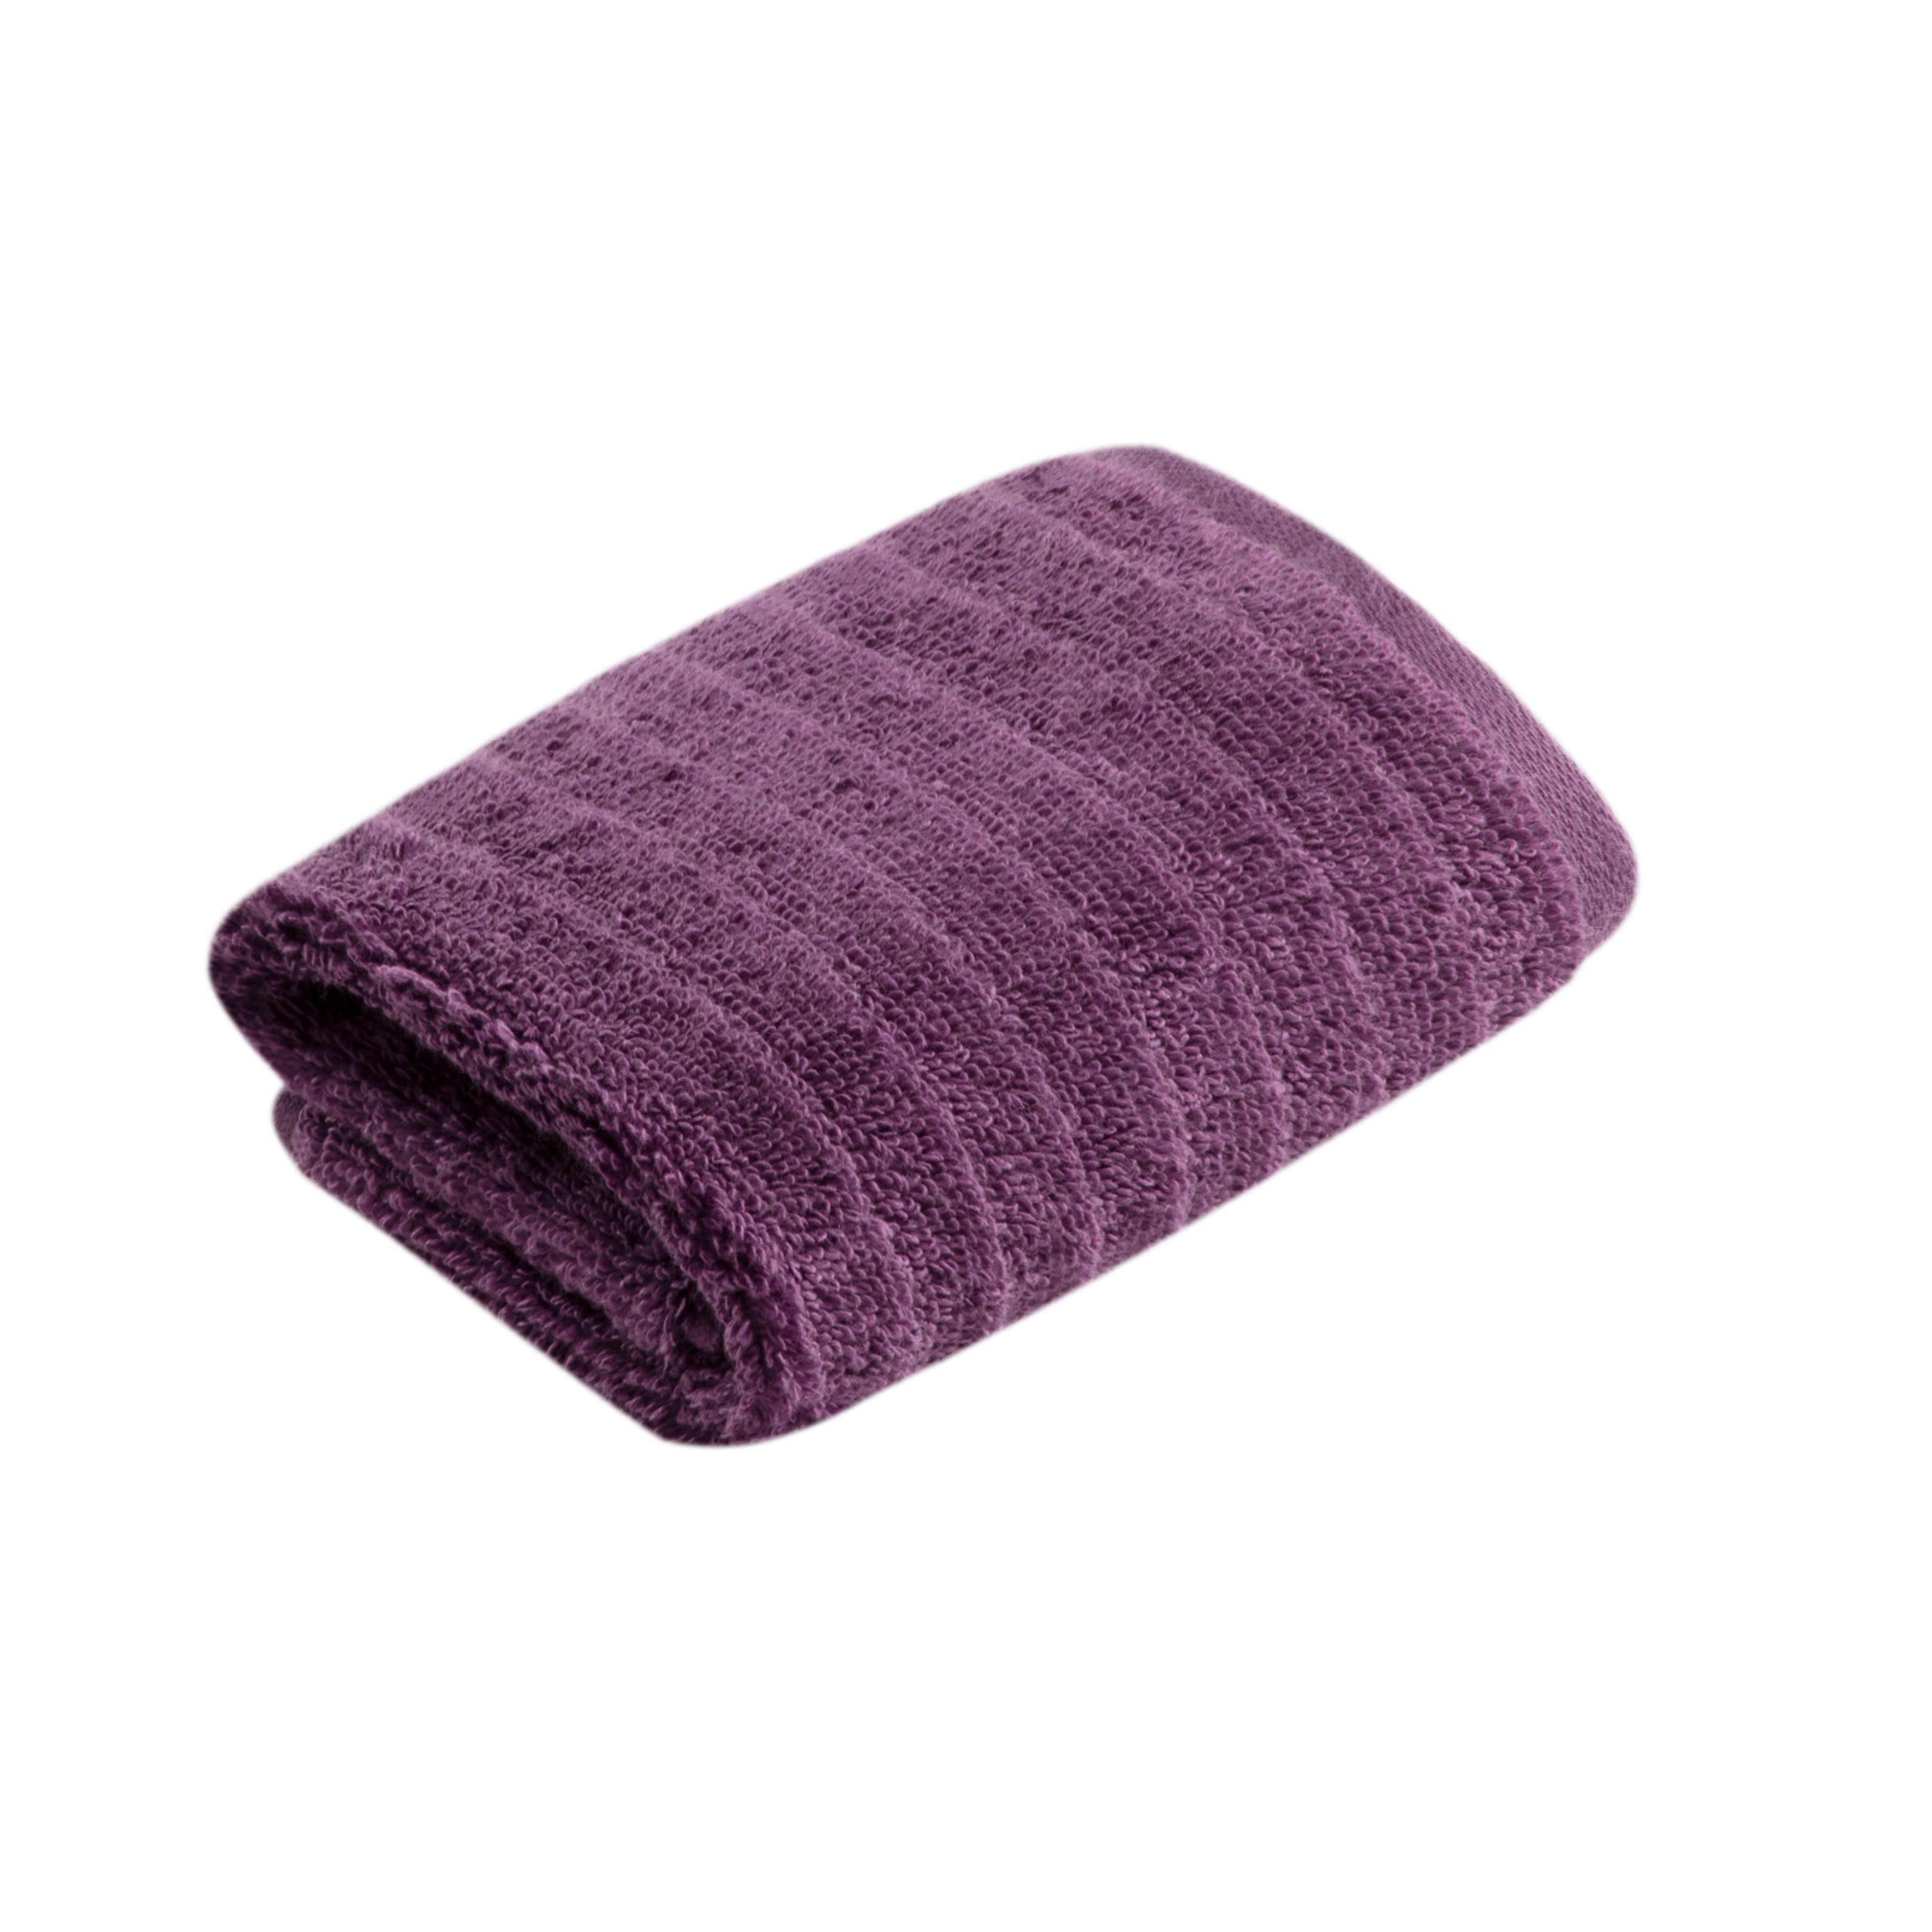 SEIFTUCH Mystic NOS Vossen Wäsche  - Violett, Basics, Textil (30/30cm) - Vossen